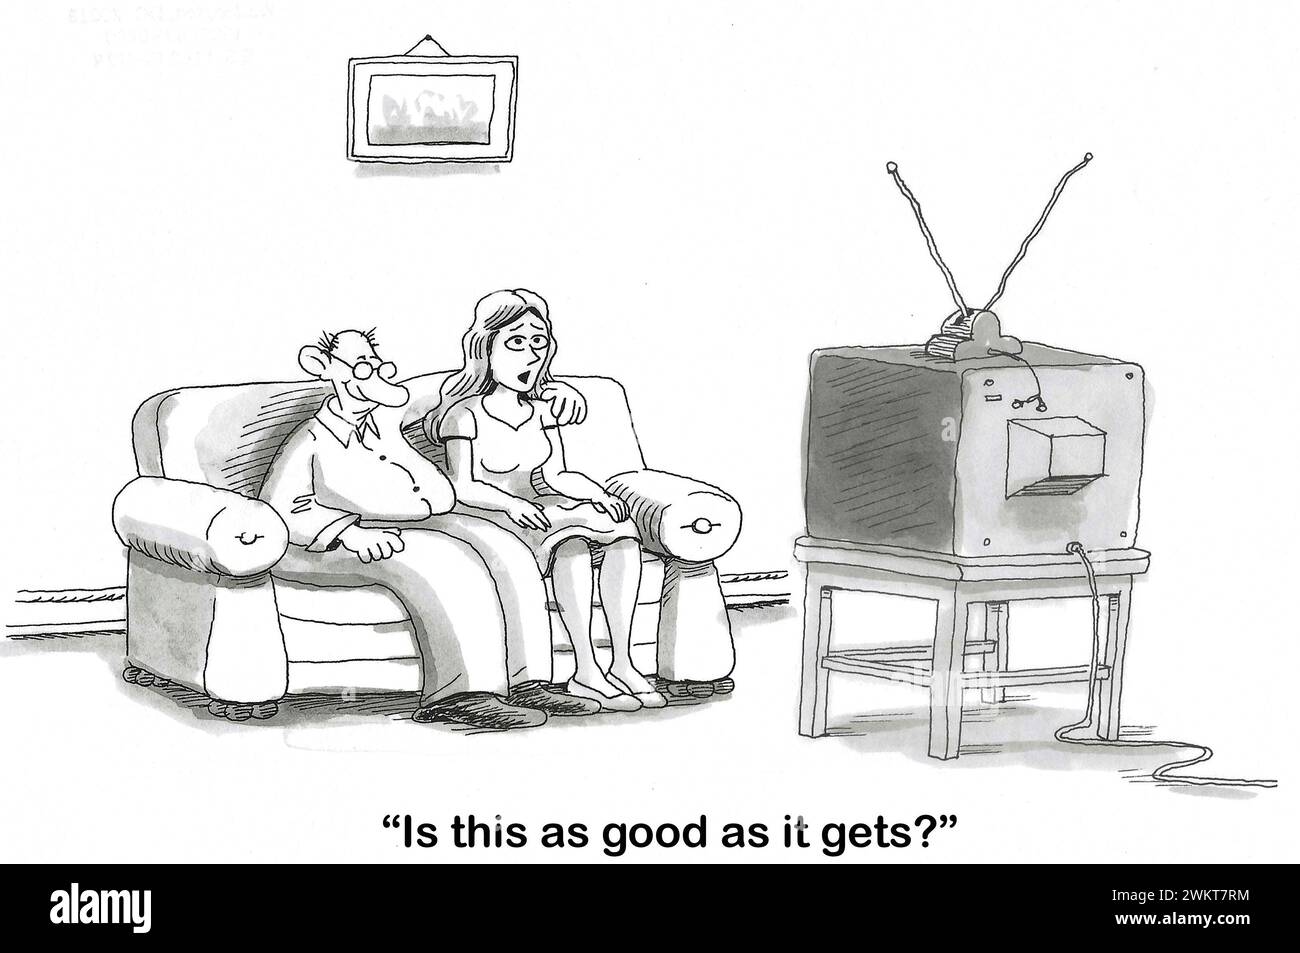 BW Cartoon von einem Paar, sie attraktiv, er sieht nicht so, fernsehen. Die Frau fragt sich plötzlich: "Ist das so gut, wie es geht?" Stockfoto